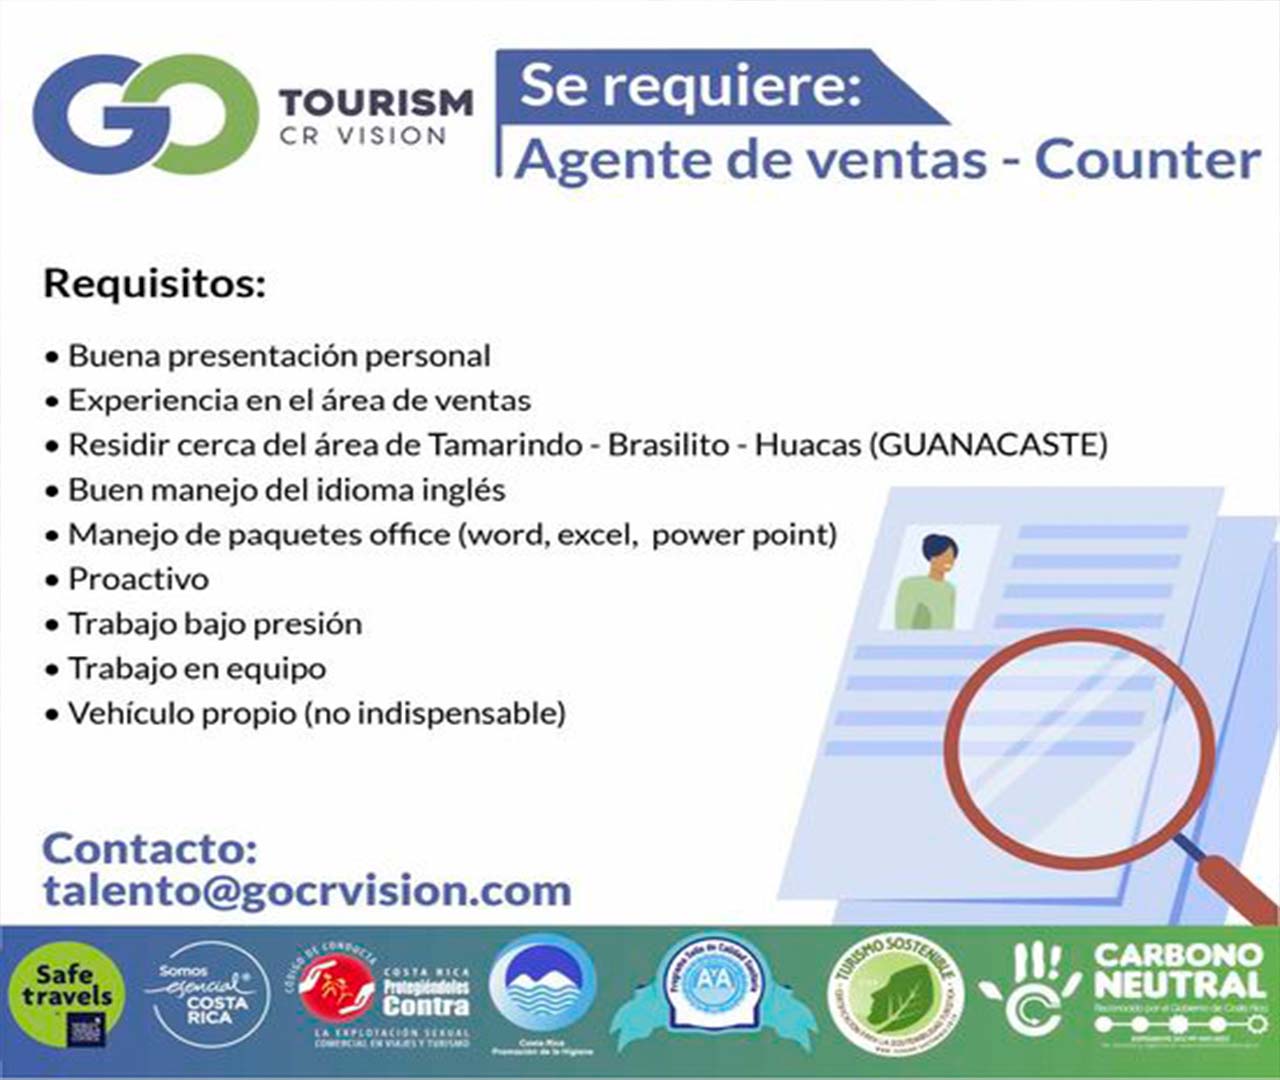 Tourism Cr Vision Requiere Contratar: Agente de Ventas - Counter.alt